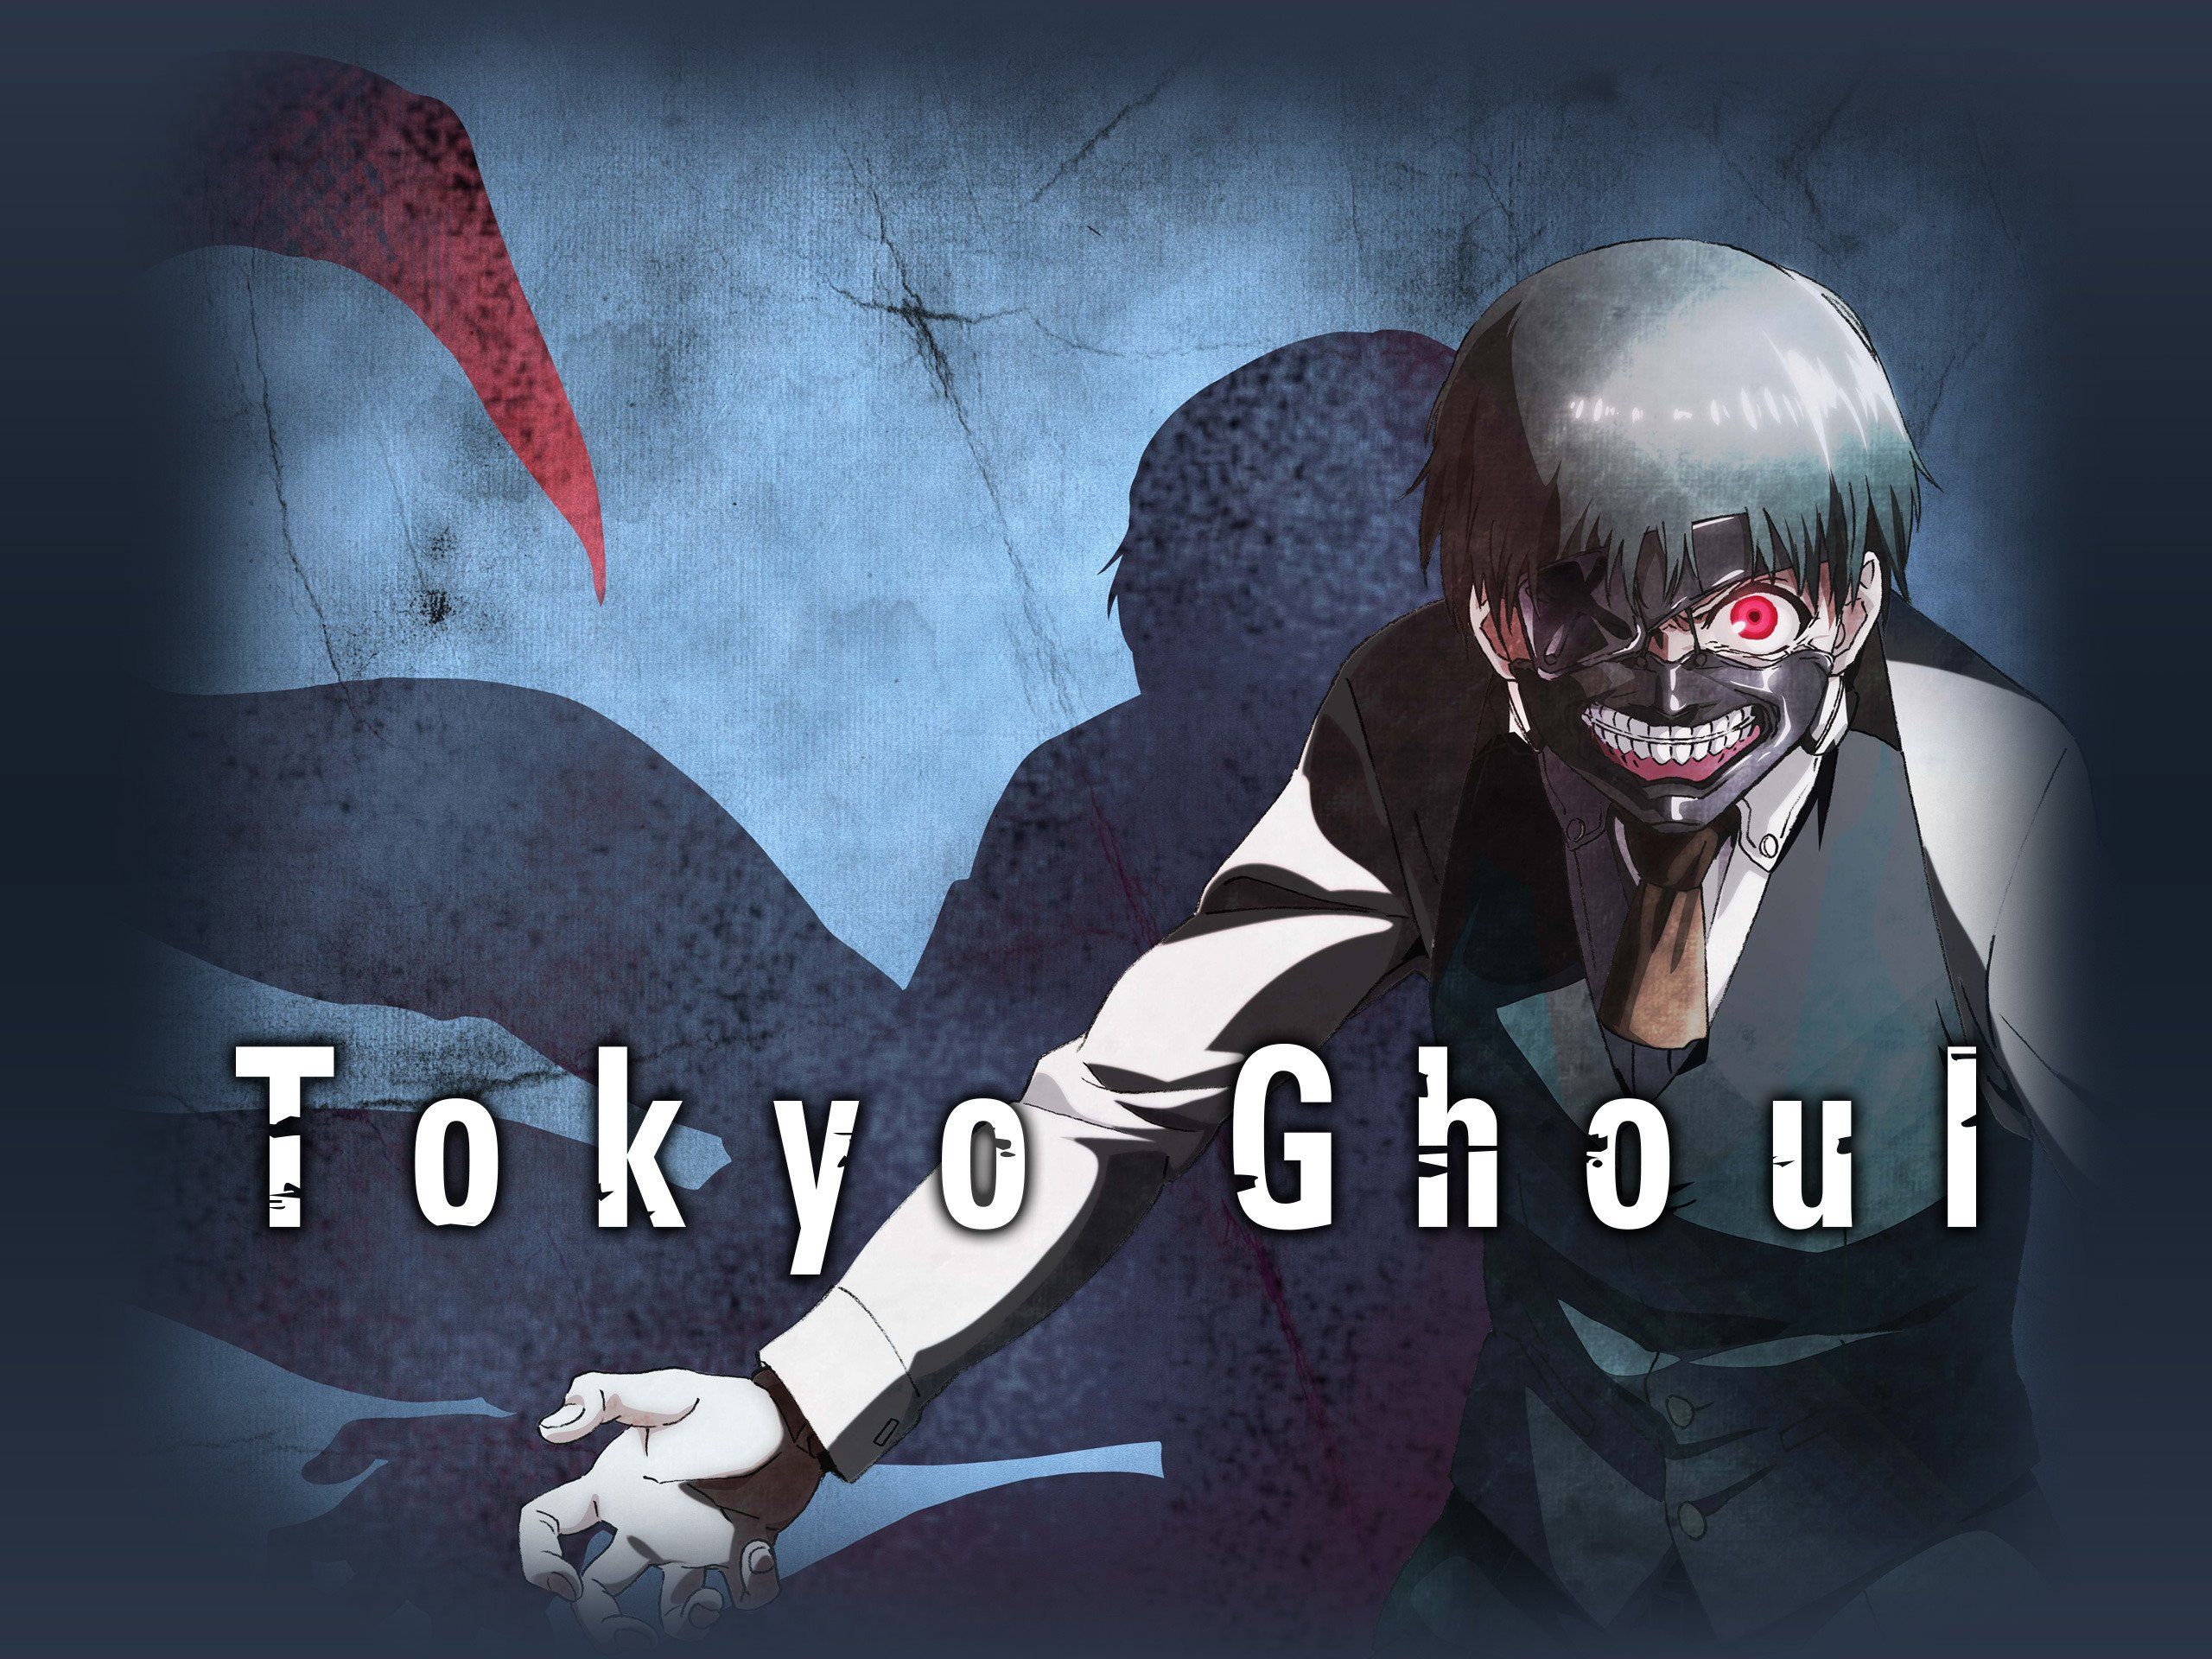 Watch Tokyo Ghoul Season 1